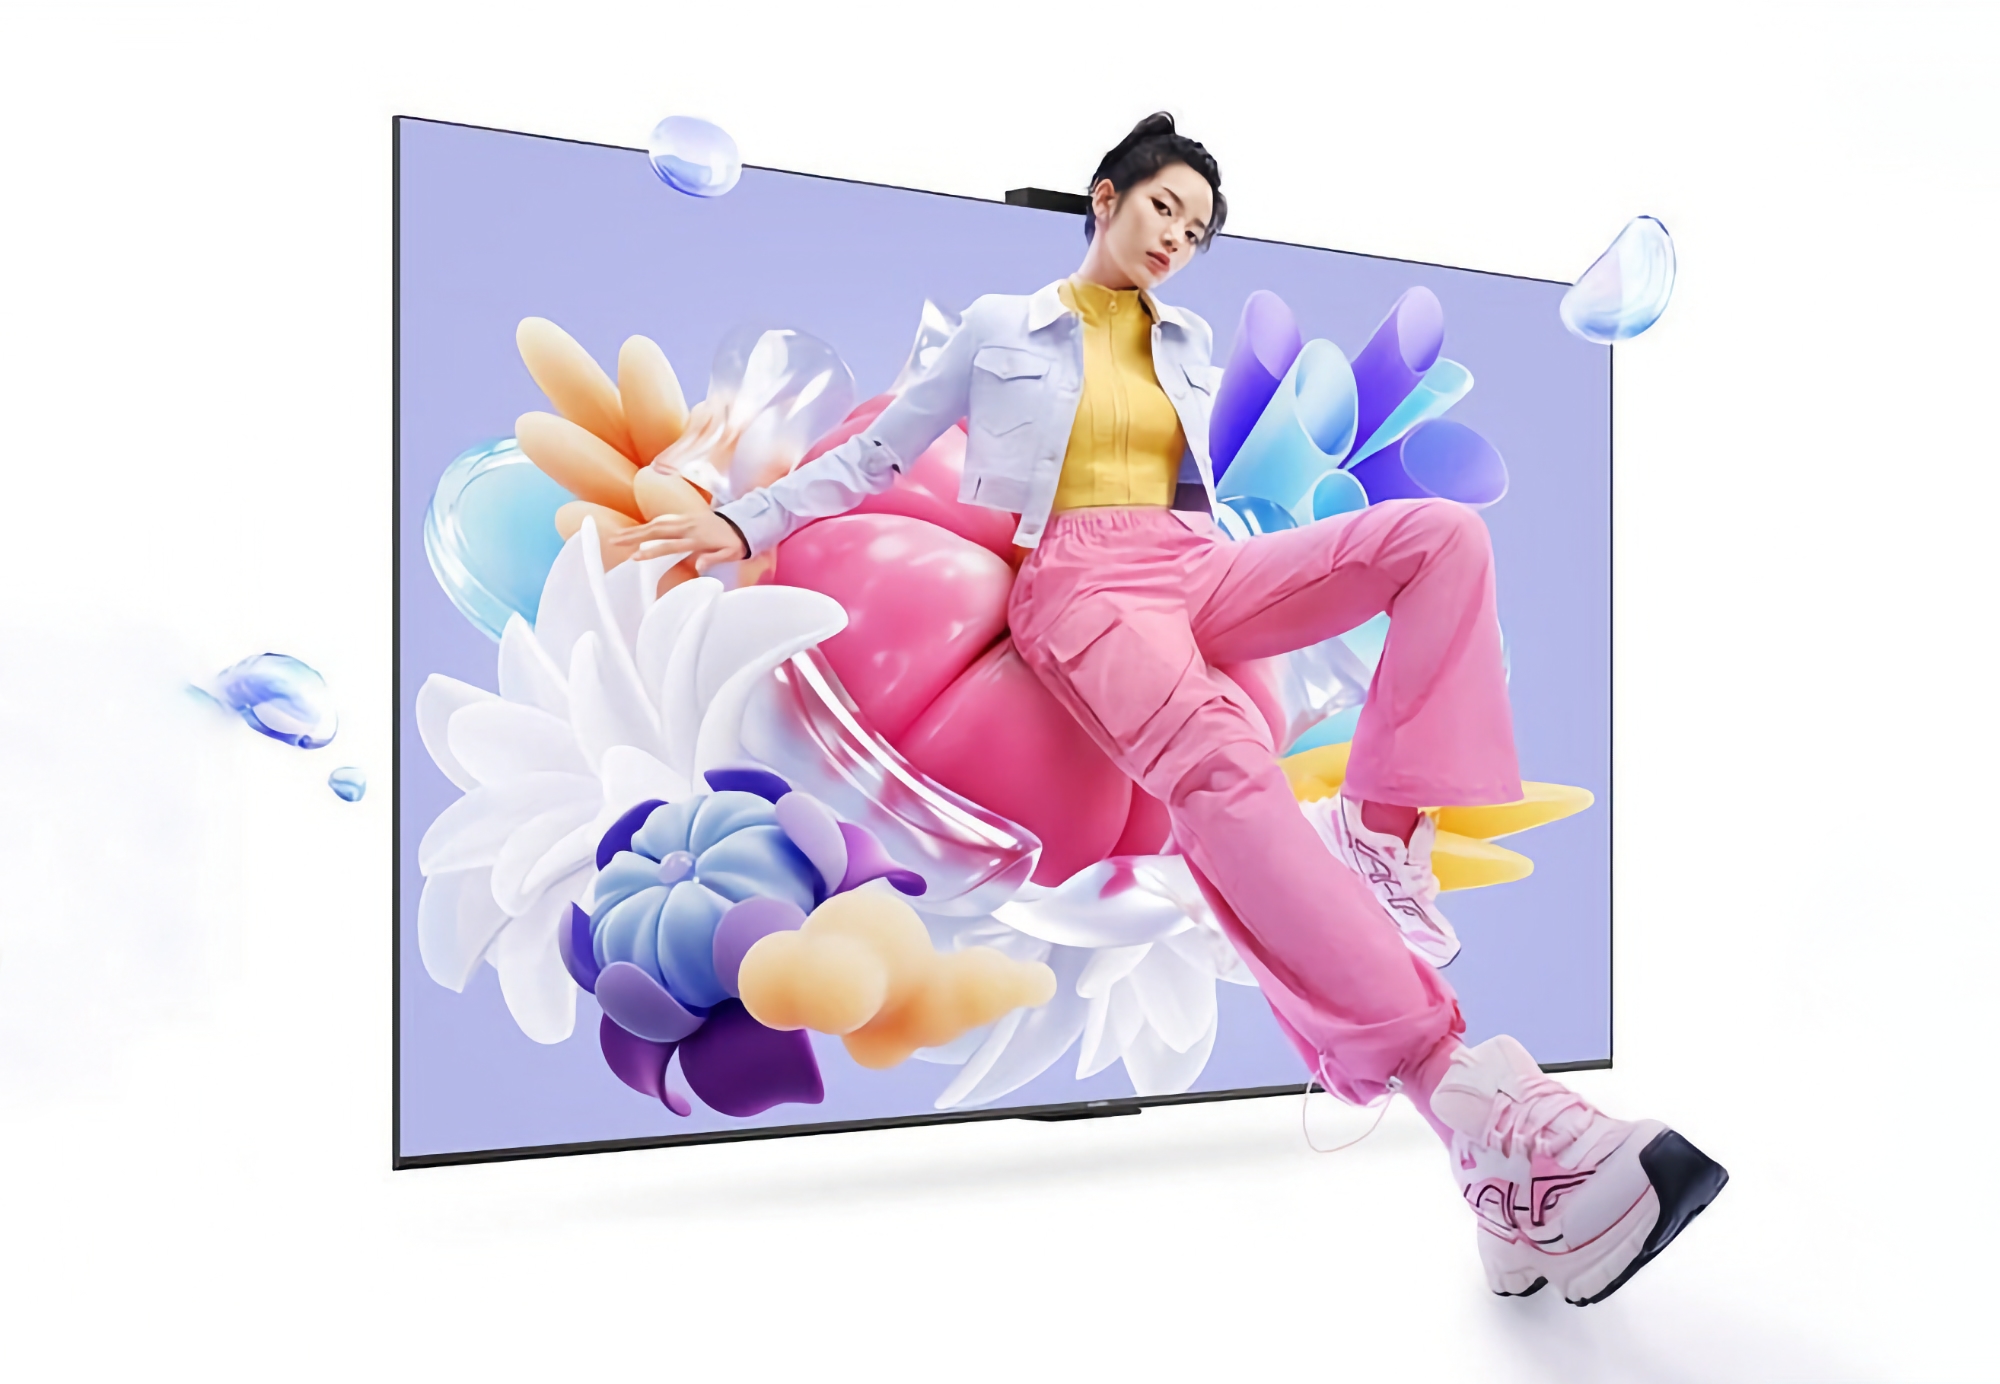 Huawei zaprezentował Vision Smart Screen 4 SE: linię telewizorów 4K z ekranami 120 Hz, systemem HarmonyOS 4.2 i cenami zaczynającymi się od 352 USD.